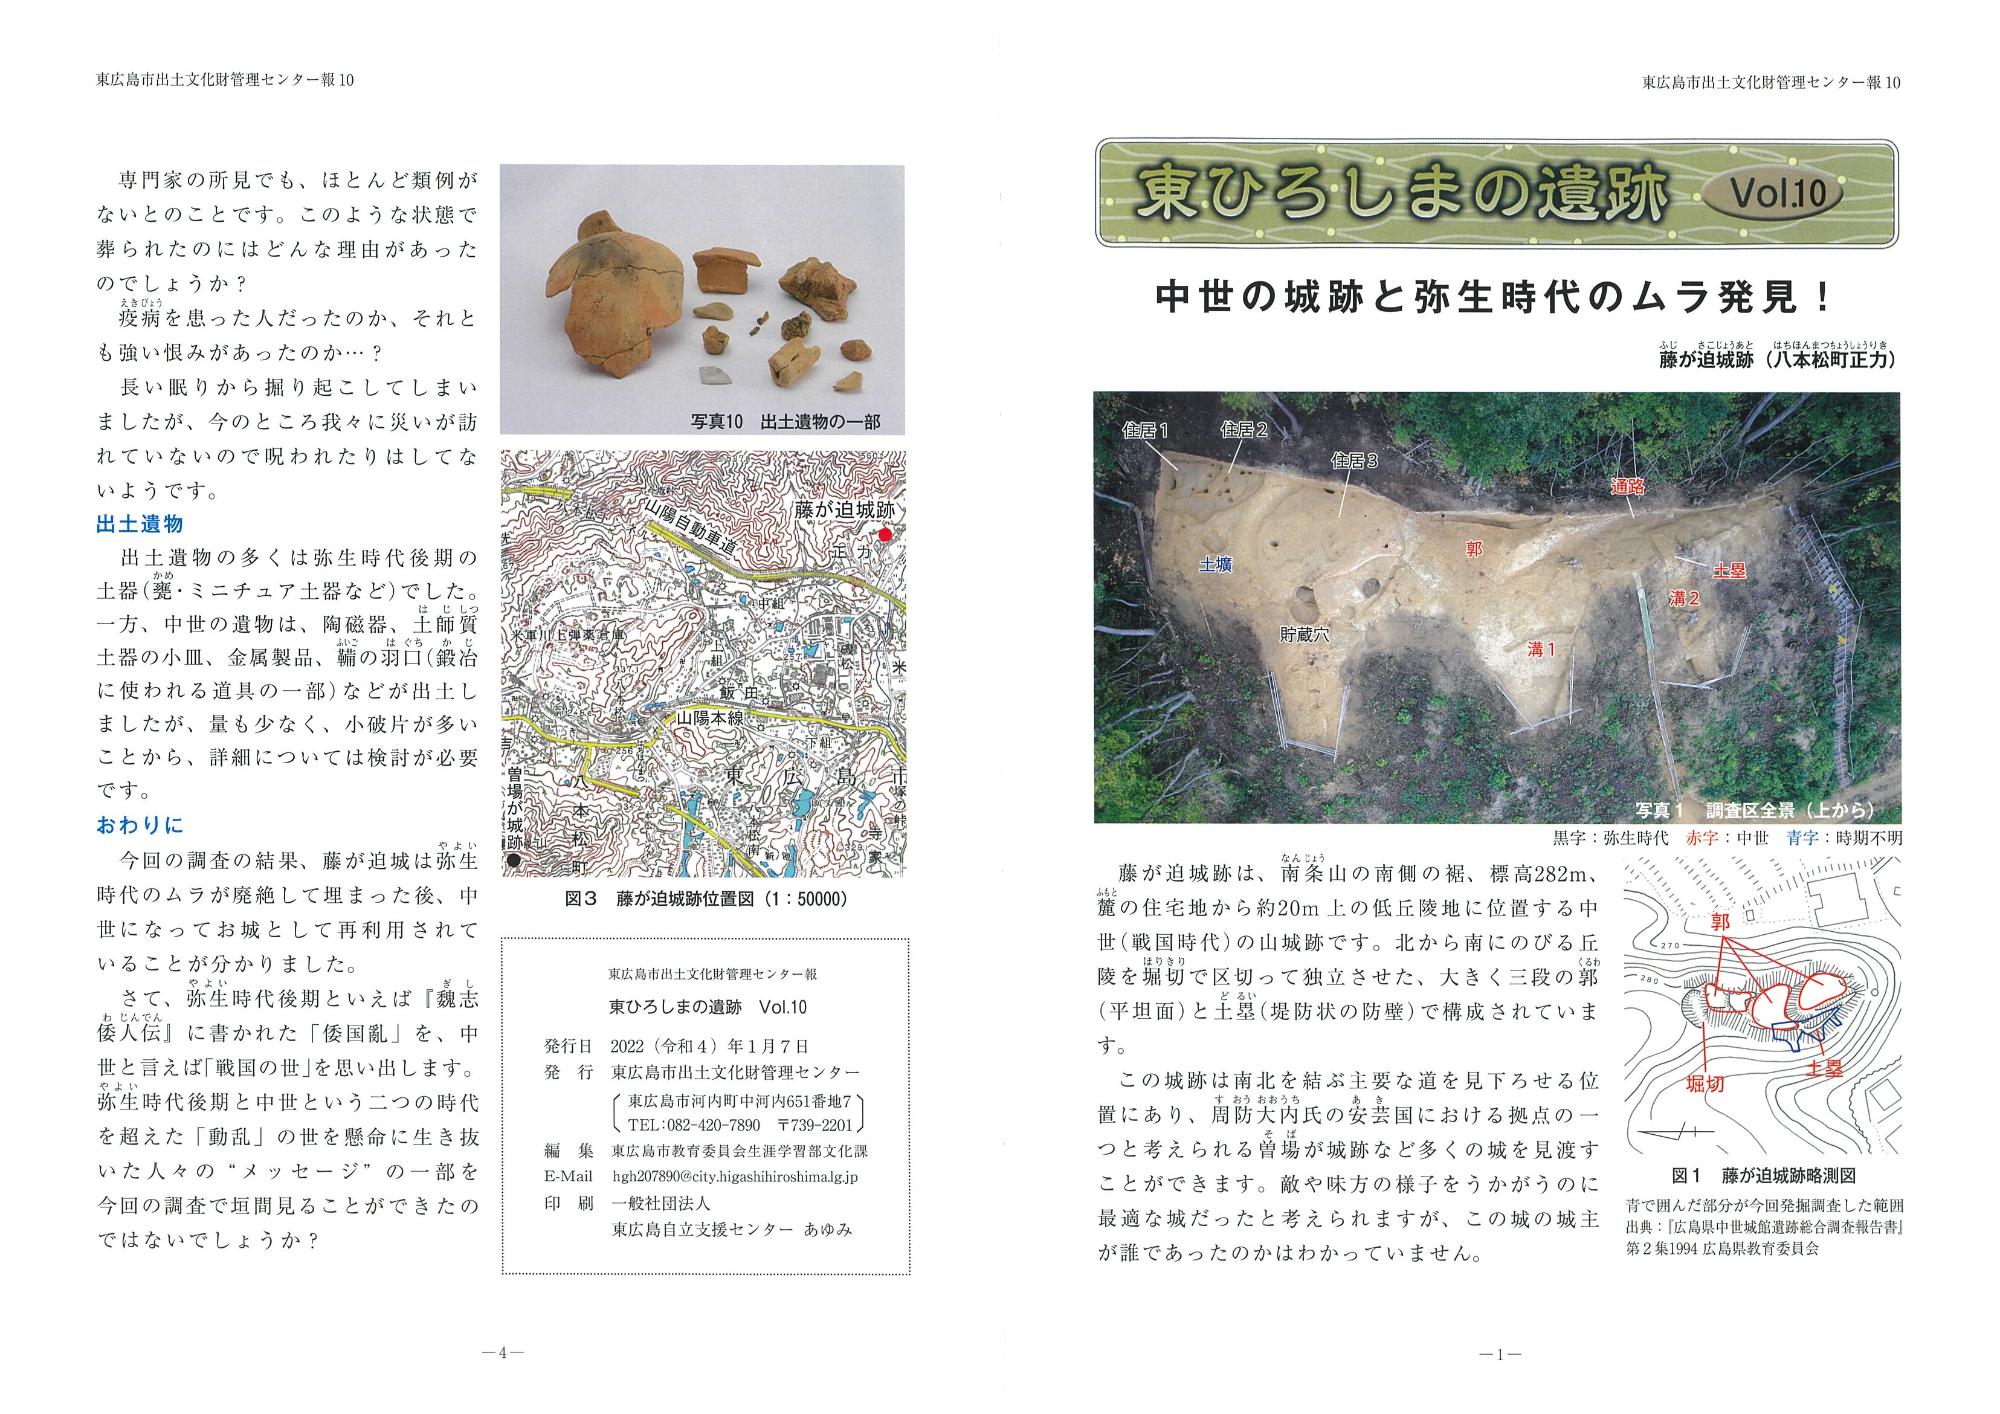 東広島市出土文化財管理センター報 『東ひろしまの遺跡』10の写真1